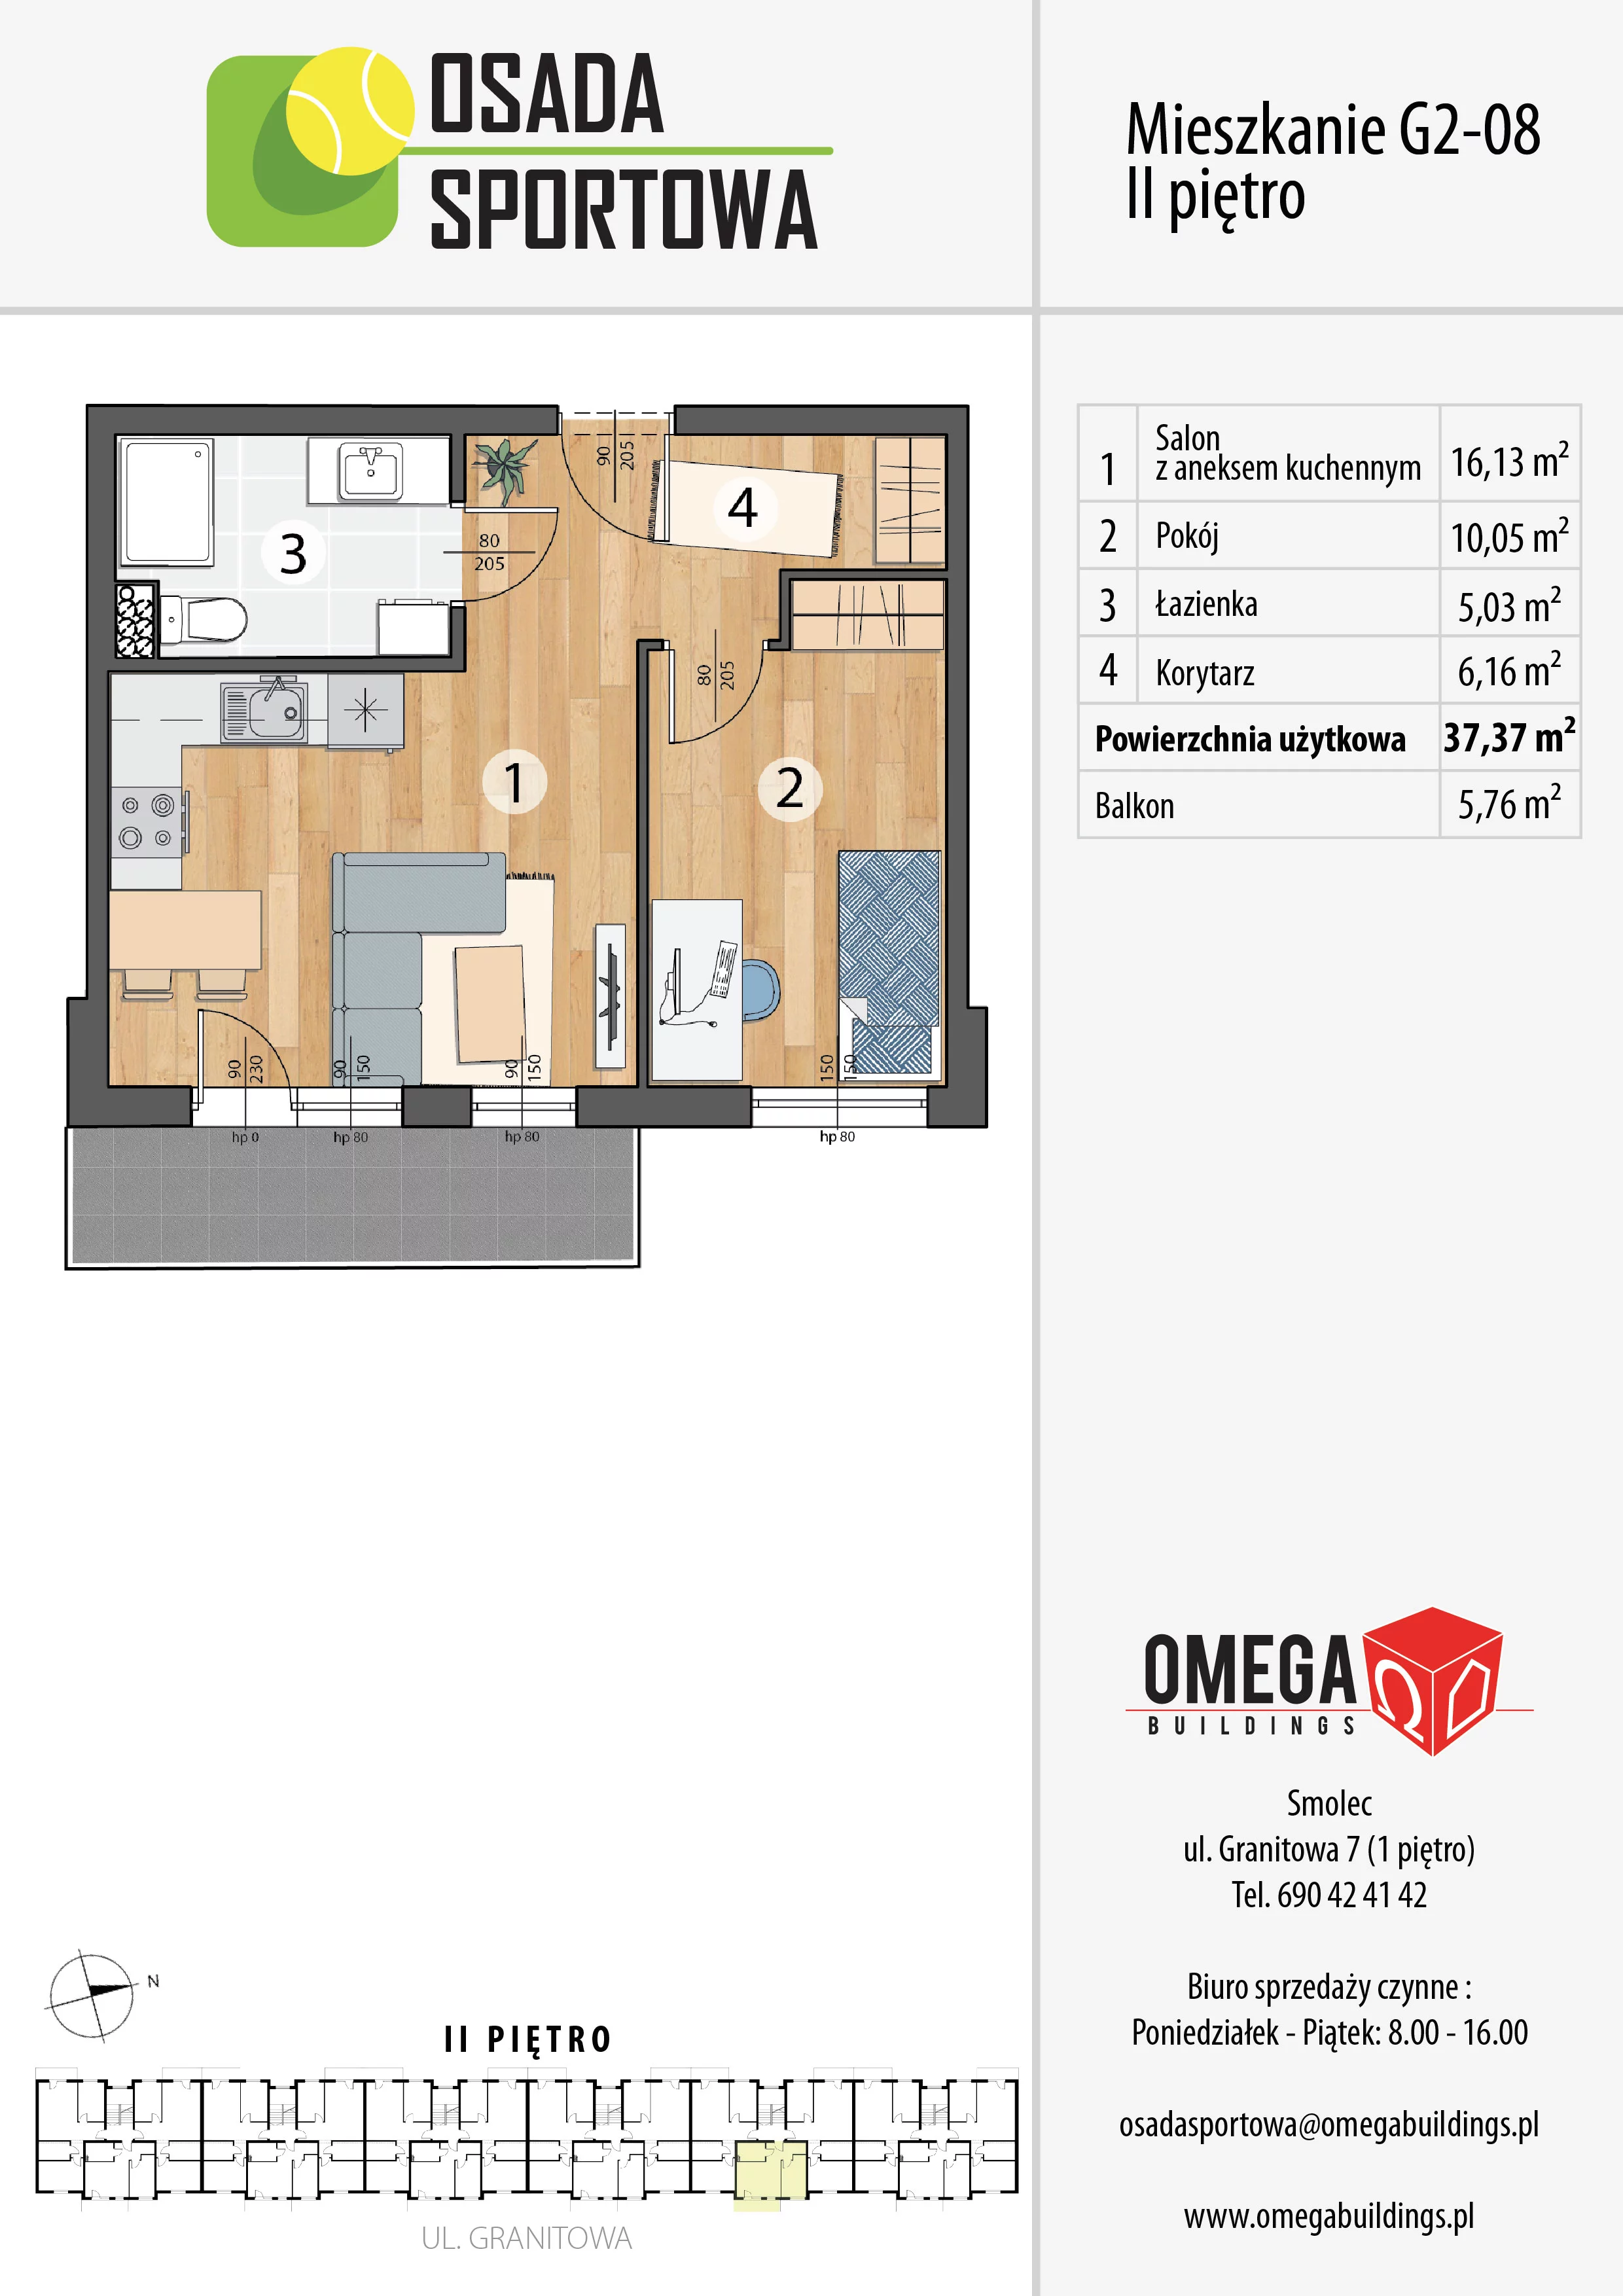 Mieszkanie 37,37 m², piętro 2, oferta nr G2-08, Osada Sportowa Budynek G, Smolec, ul. Granitowa 52-62